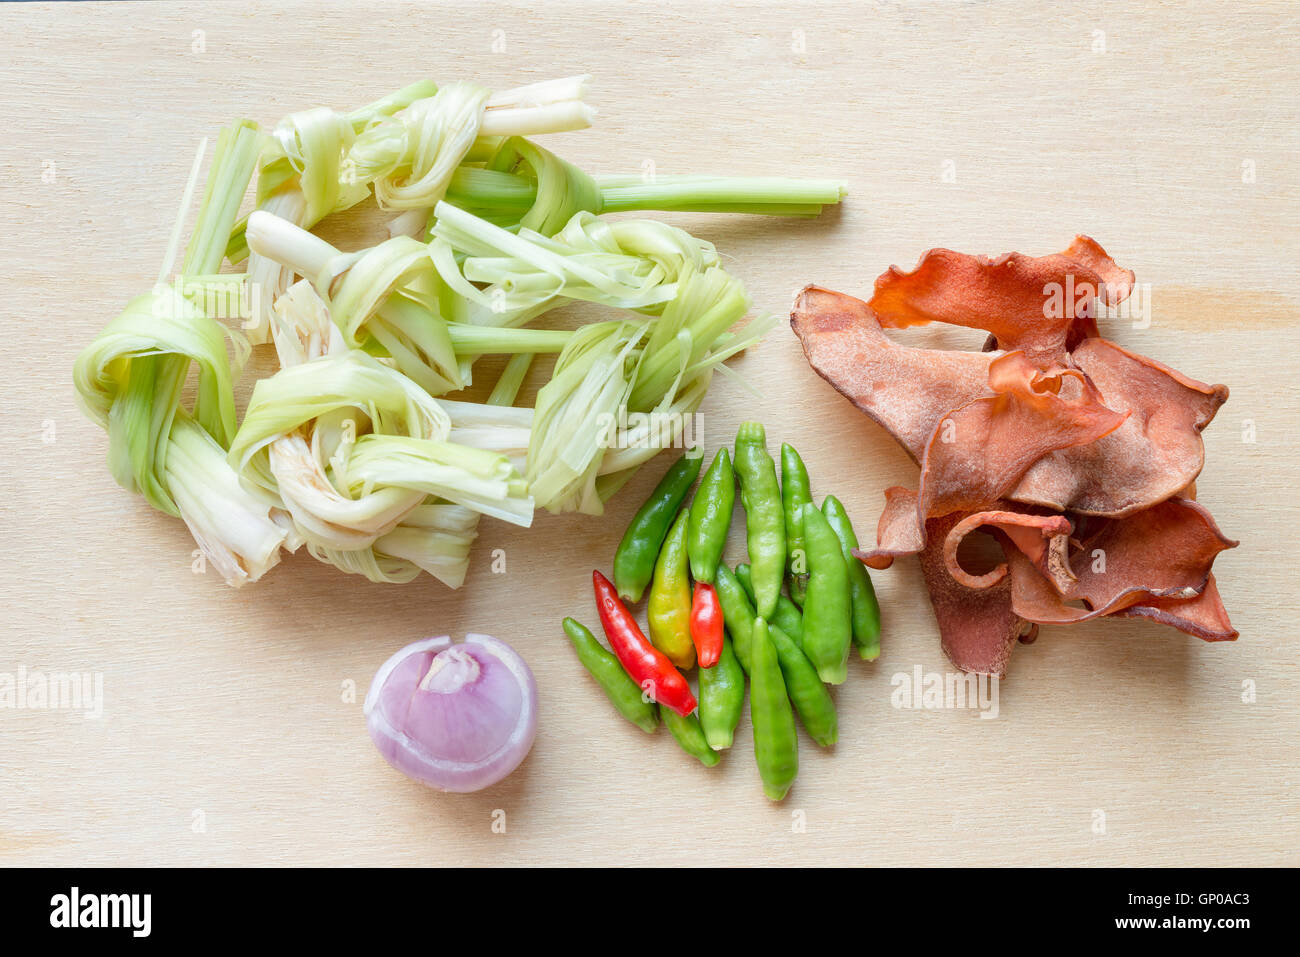 Standard-pflanzliche Zutaten für Thai-scharf-Suppe, saure Suppe, Curry. Draufsicht auf Holzutensilien. Stockfoto